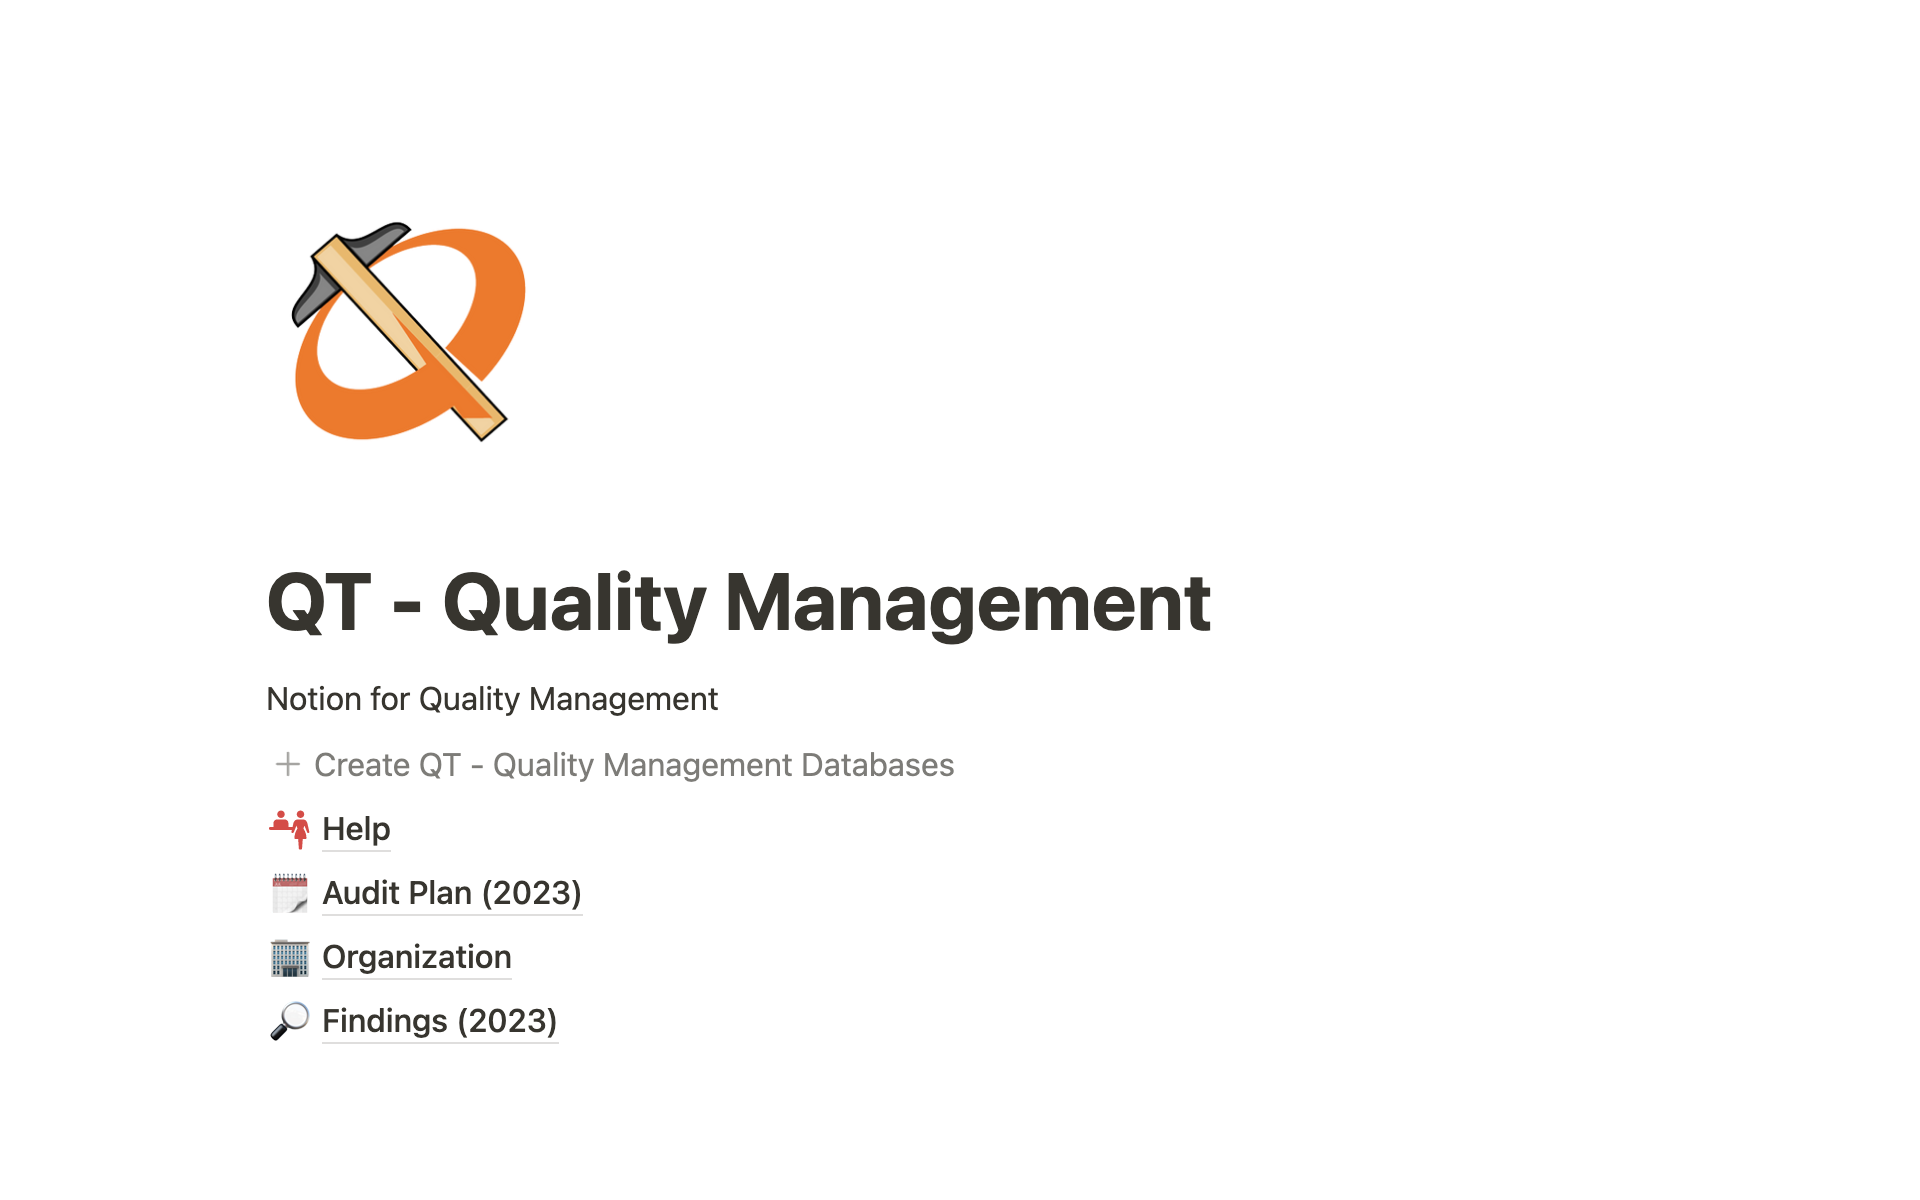 qt-quality-management-kutay-celiker-desktop